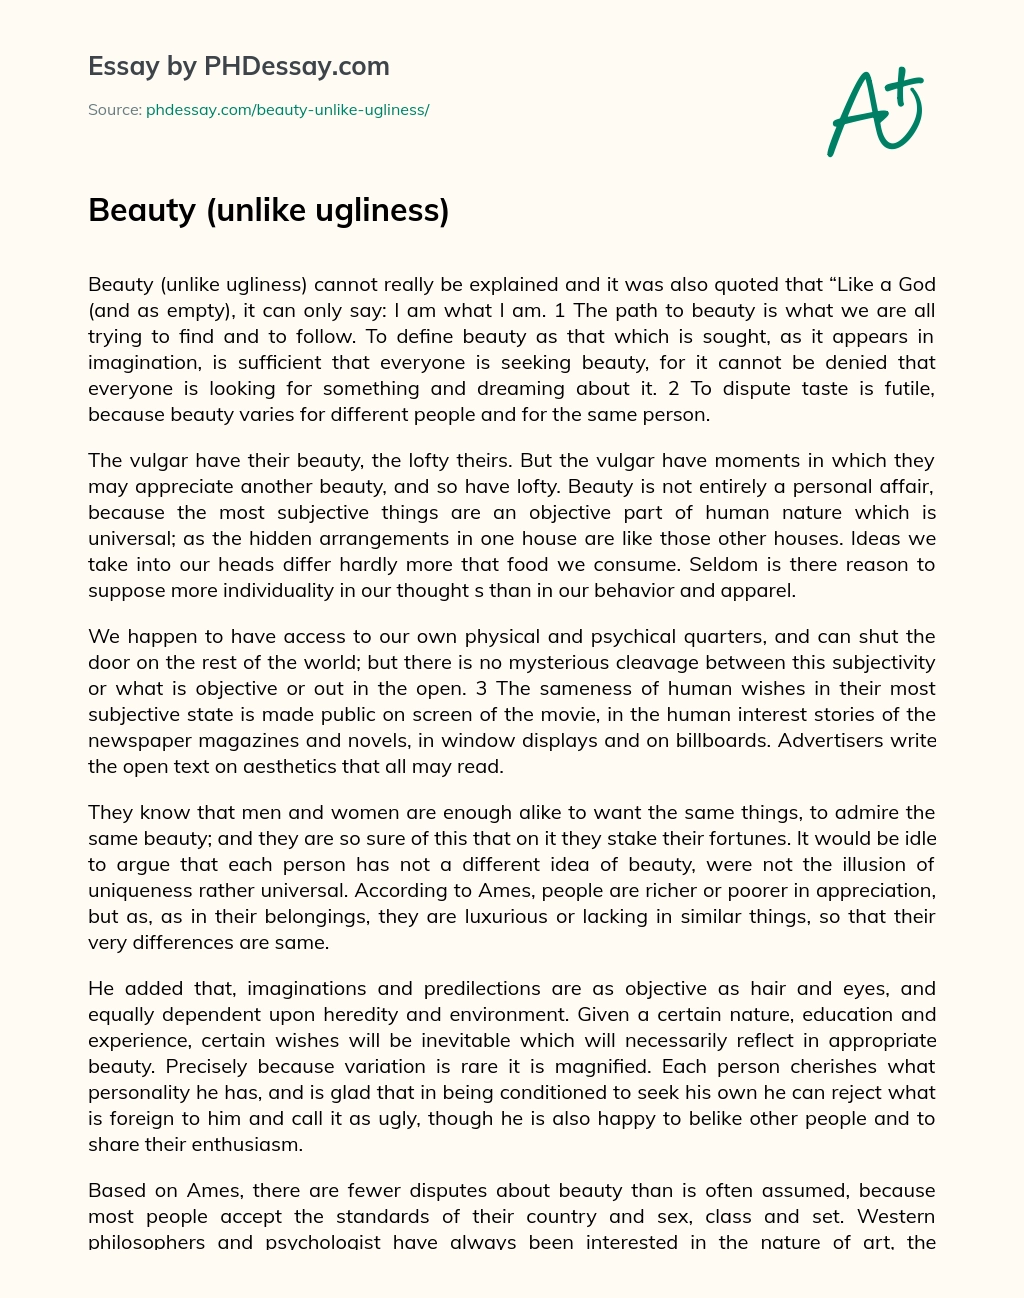 Beauty  (unlike ugliness) essay